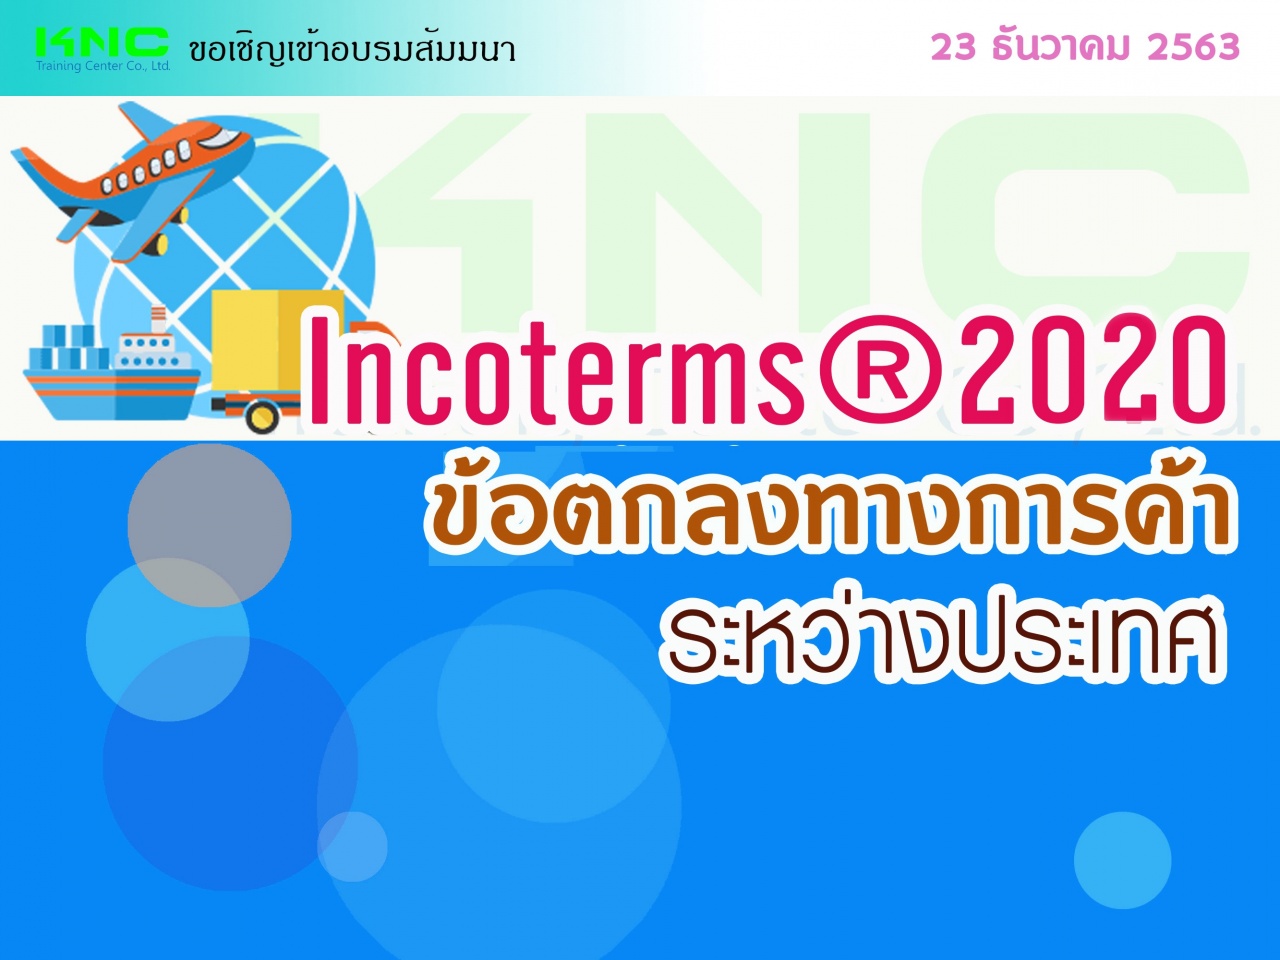 สัมมนา "INCOTERMS ® 2020 ข้อตกลงทางการค้าระหว่างประเทศ"